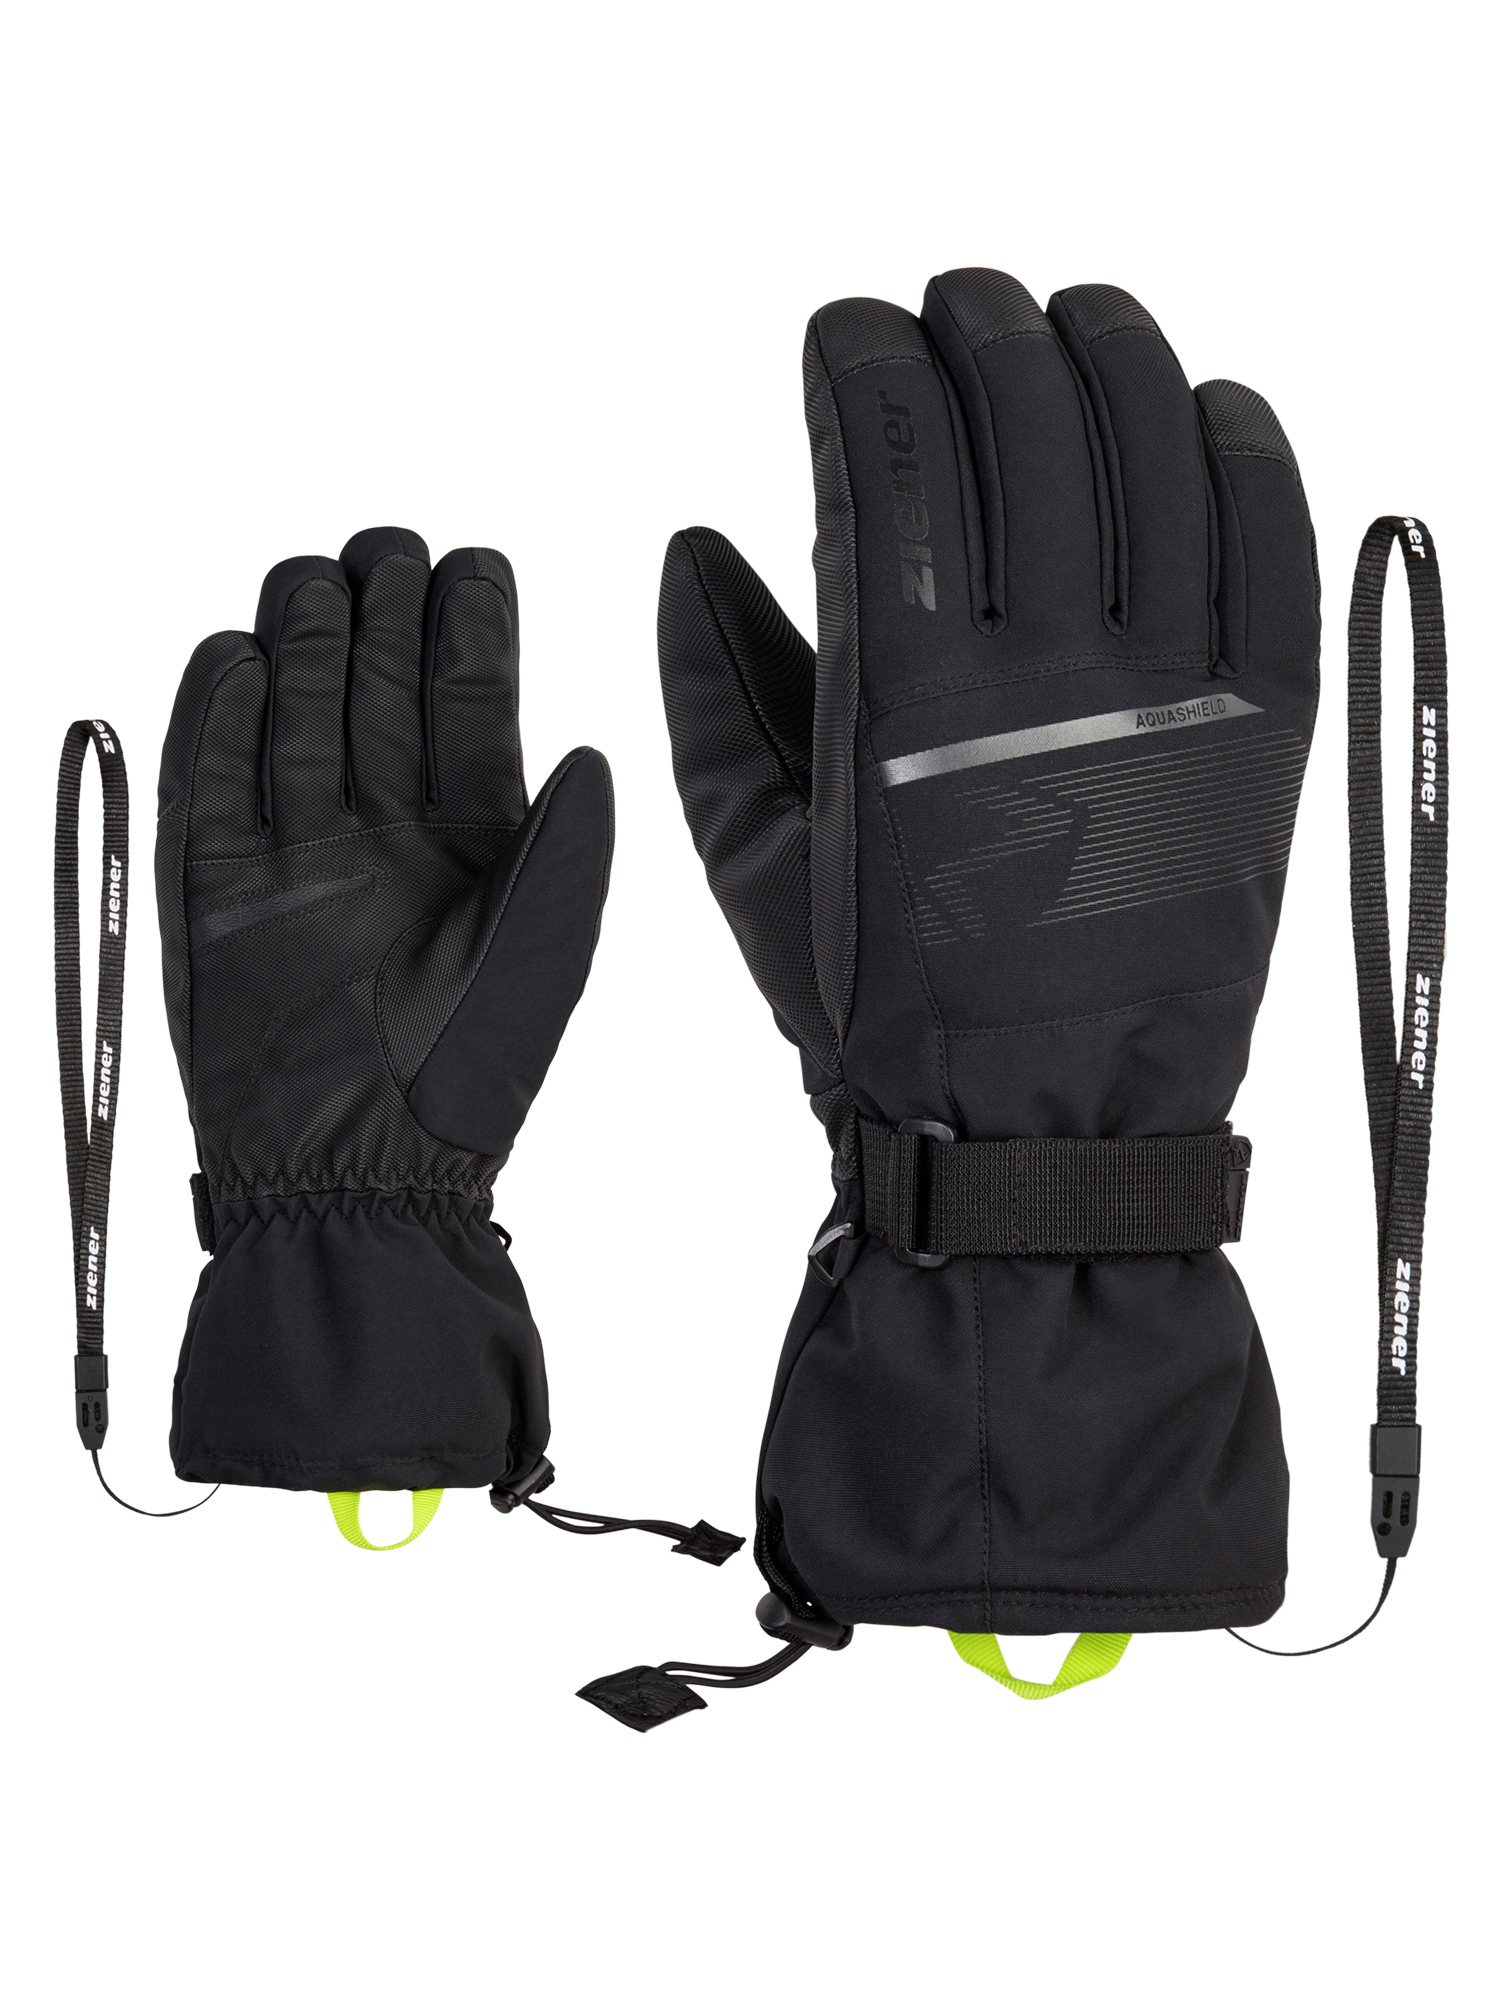 Ziener Gentian AsR Glove Ski Alpine